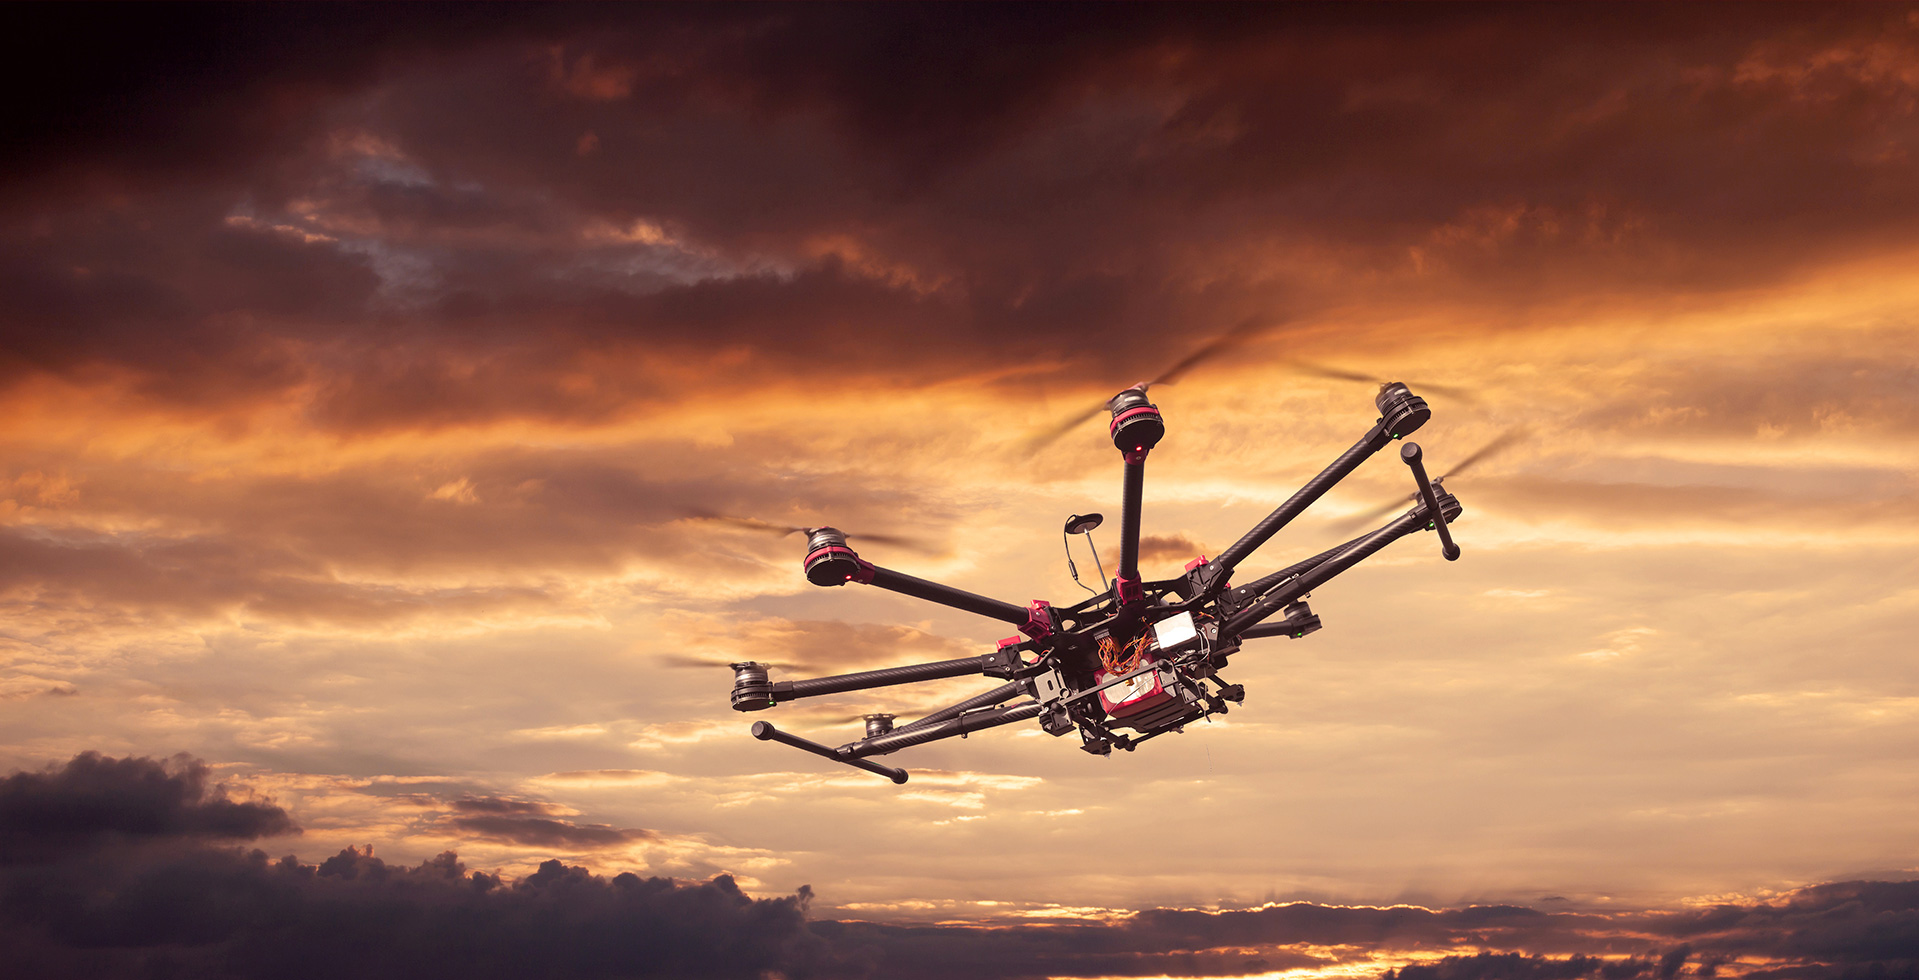 IKN Manfaatkan Teknologi Drone untuk Pemetaan Pre-Konstruksi Hingga Urban Air Mobility